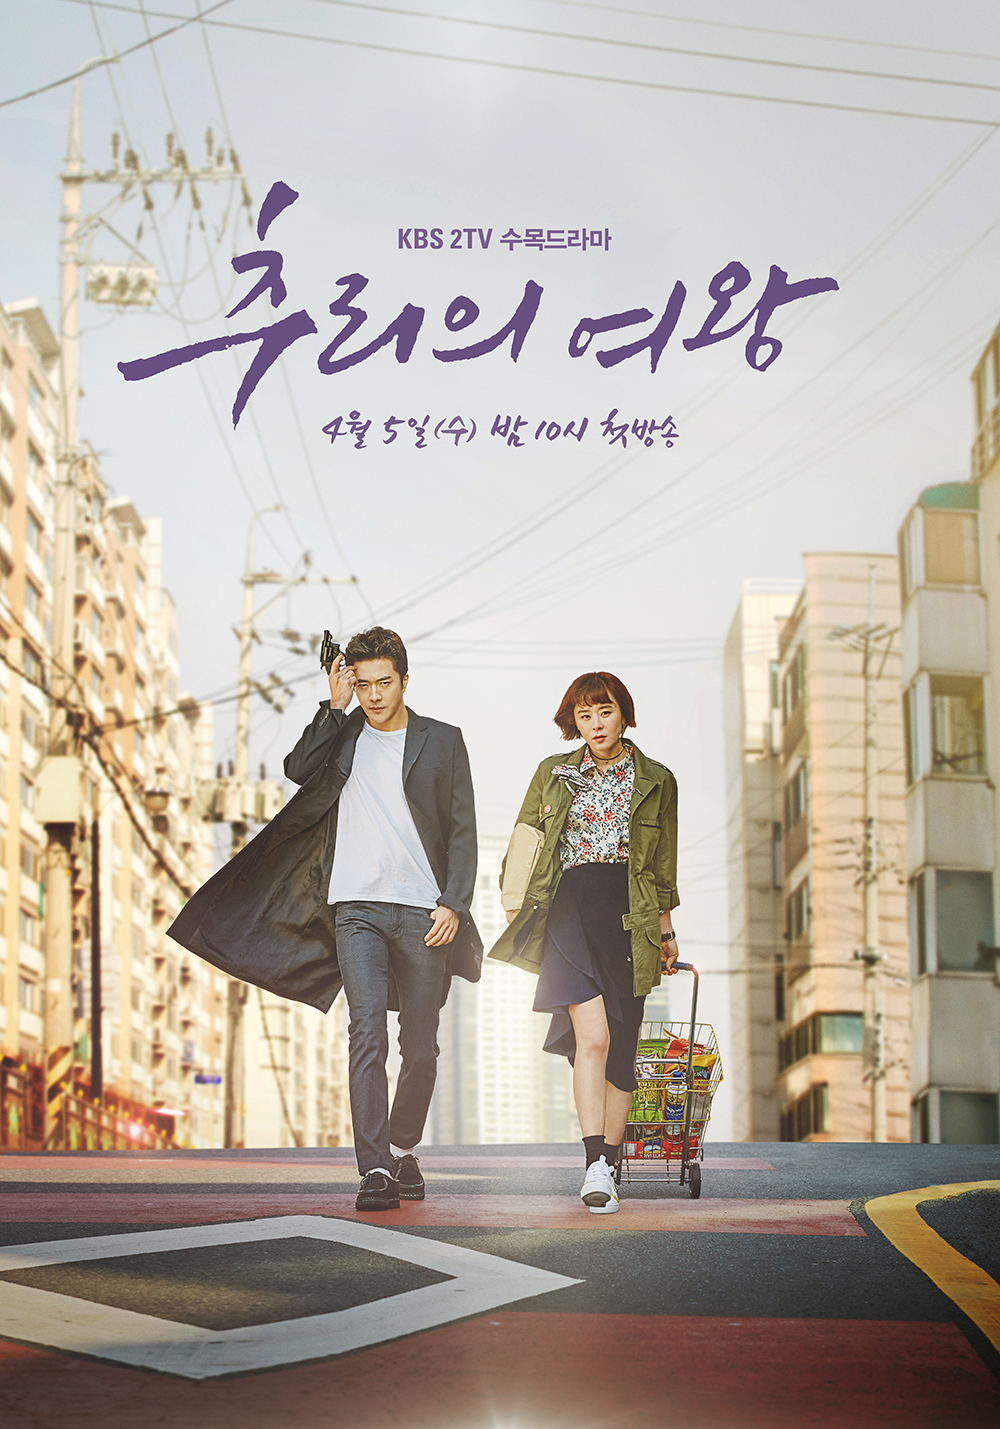 11 Drama Korea komedi misteri, penuh adegan seram dan kocak